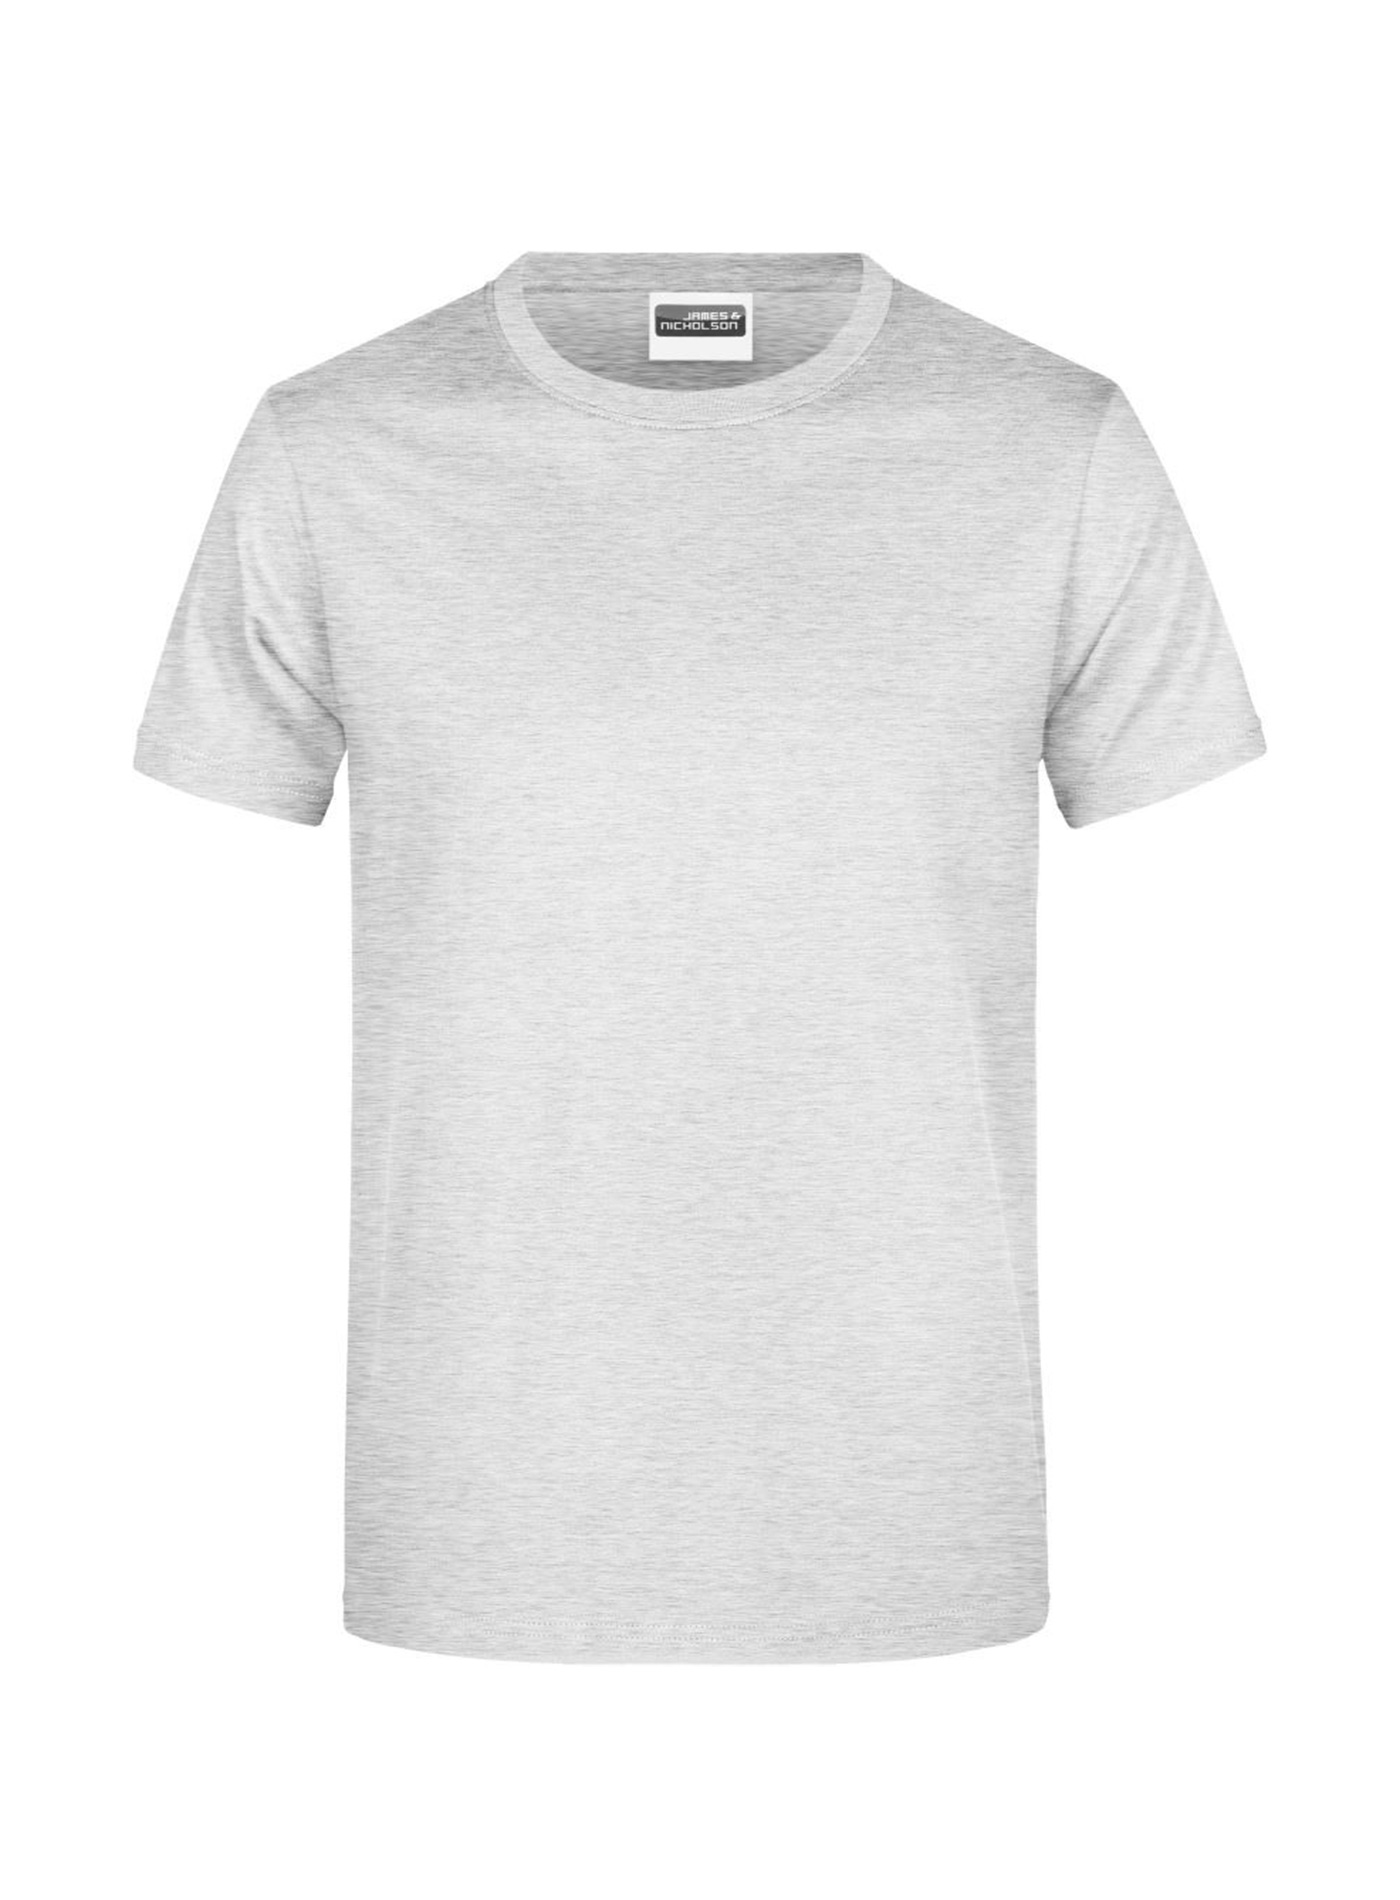 Pánské tričko James & Nicholson Heavy - Světle šedý melír XL